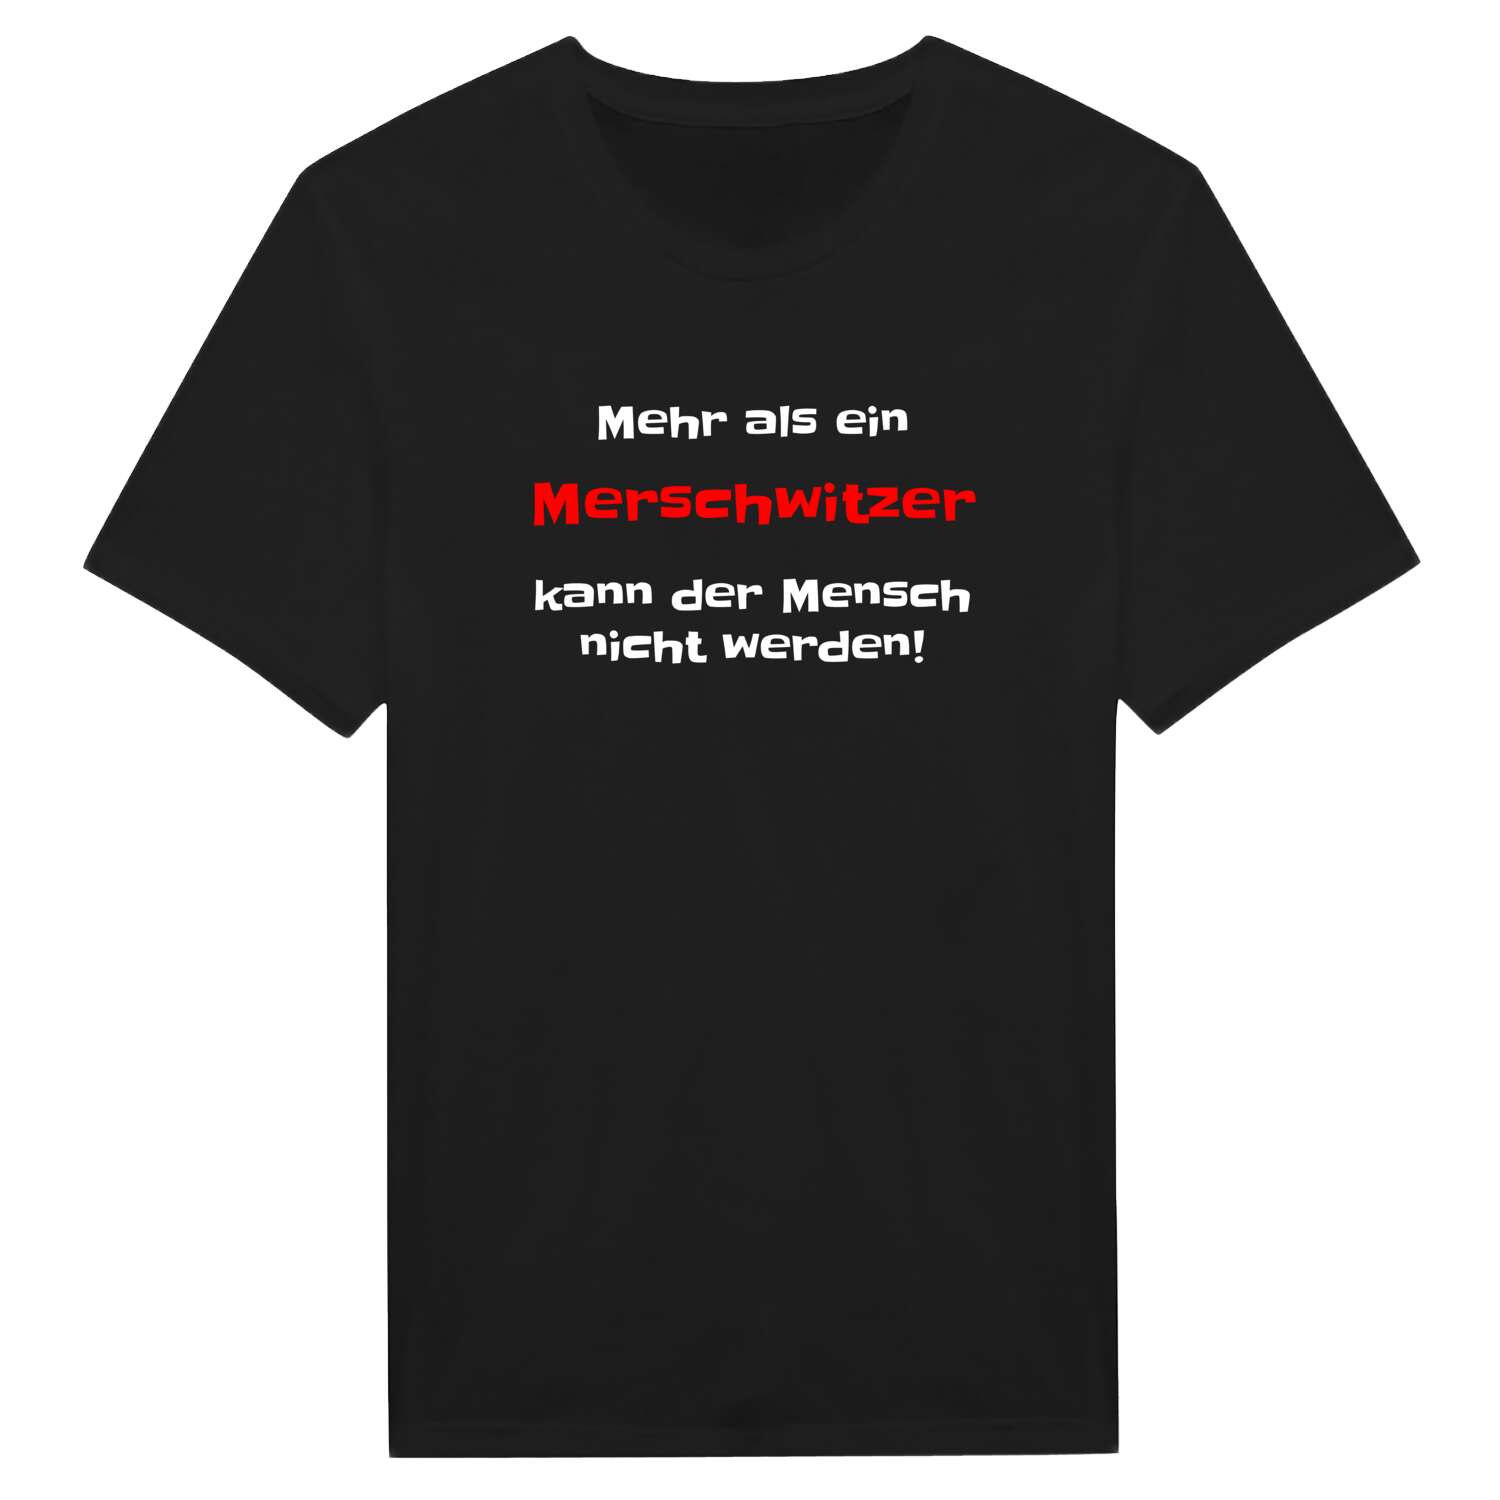 Merschwitz T-Shirt »Mehr als ein«